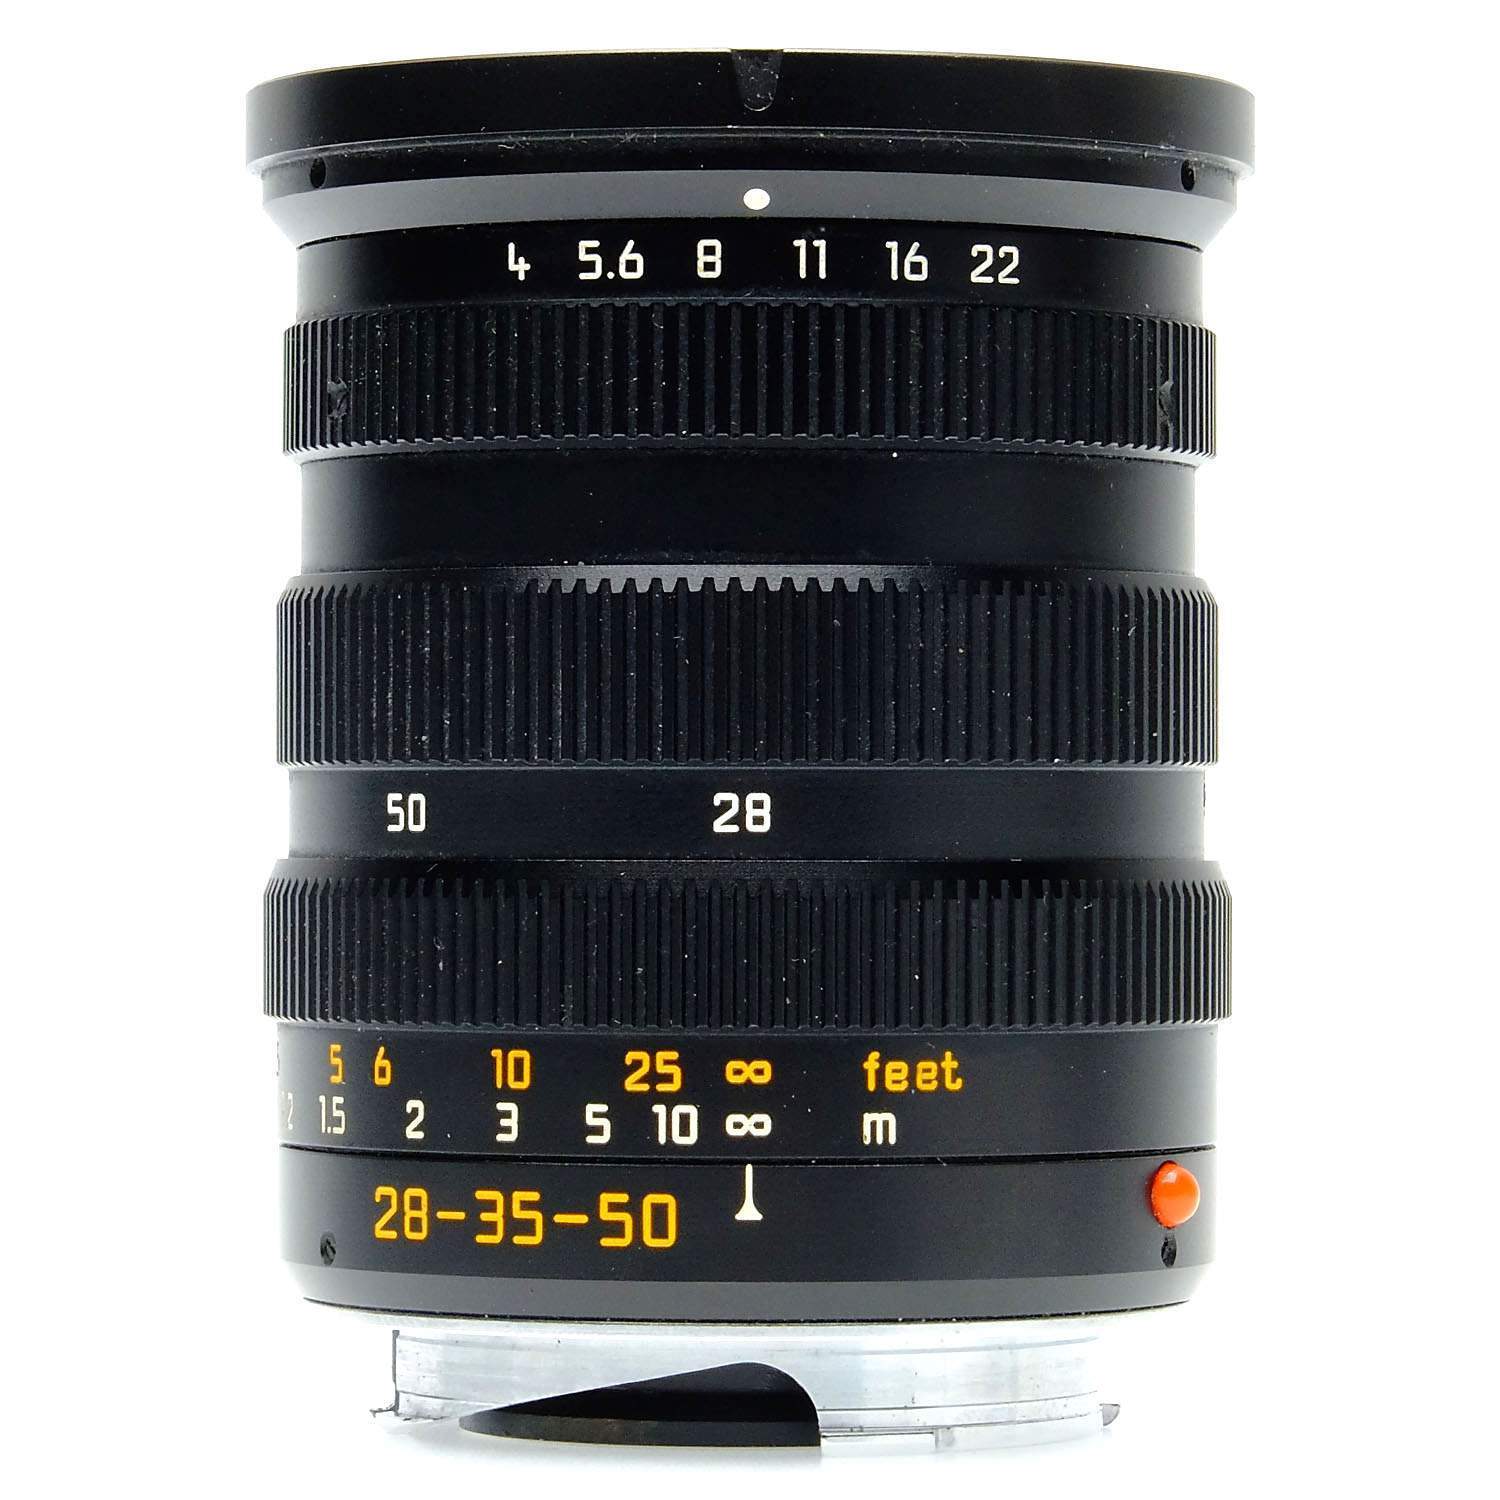 96新 徕卡 Leica M 28-35-50/4 ASPH 三焦镜头 好价格！ 